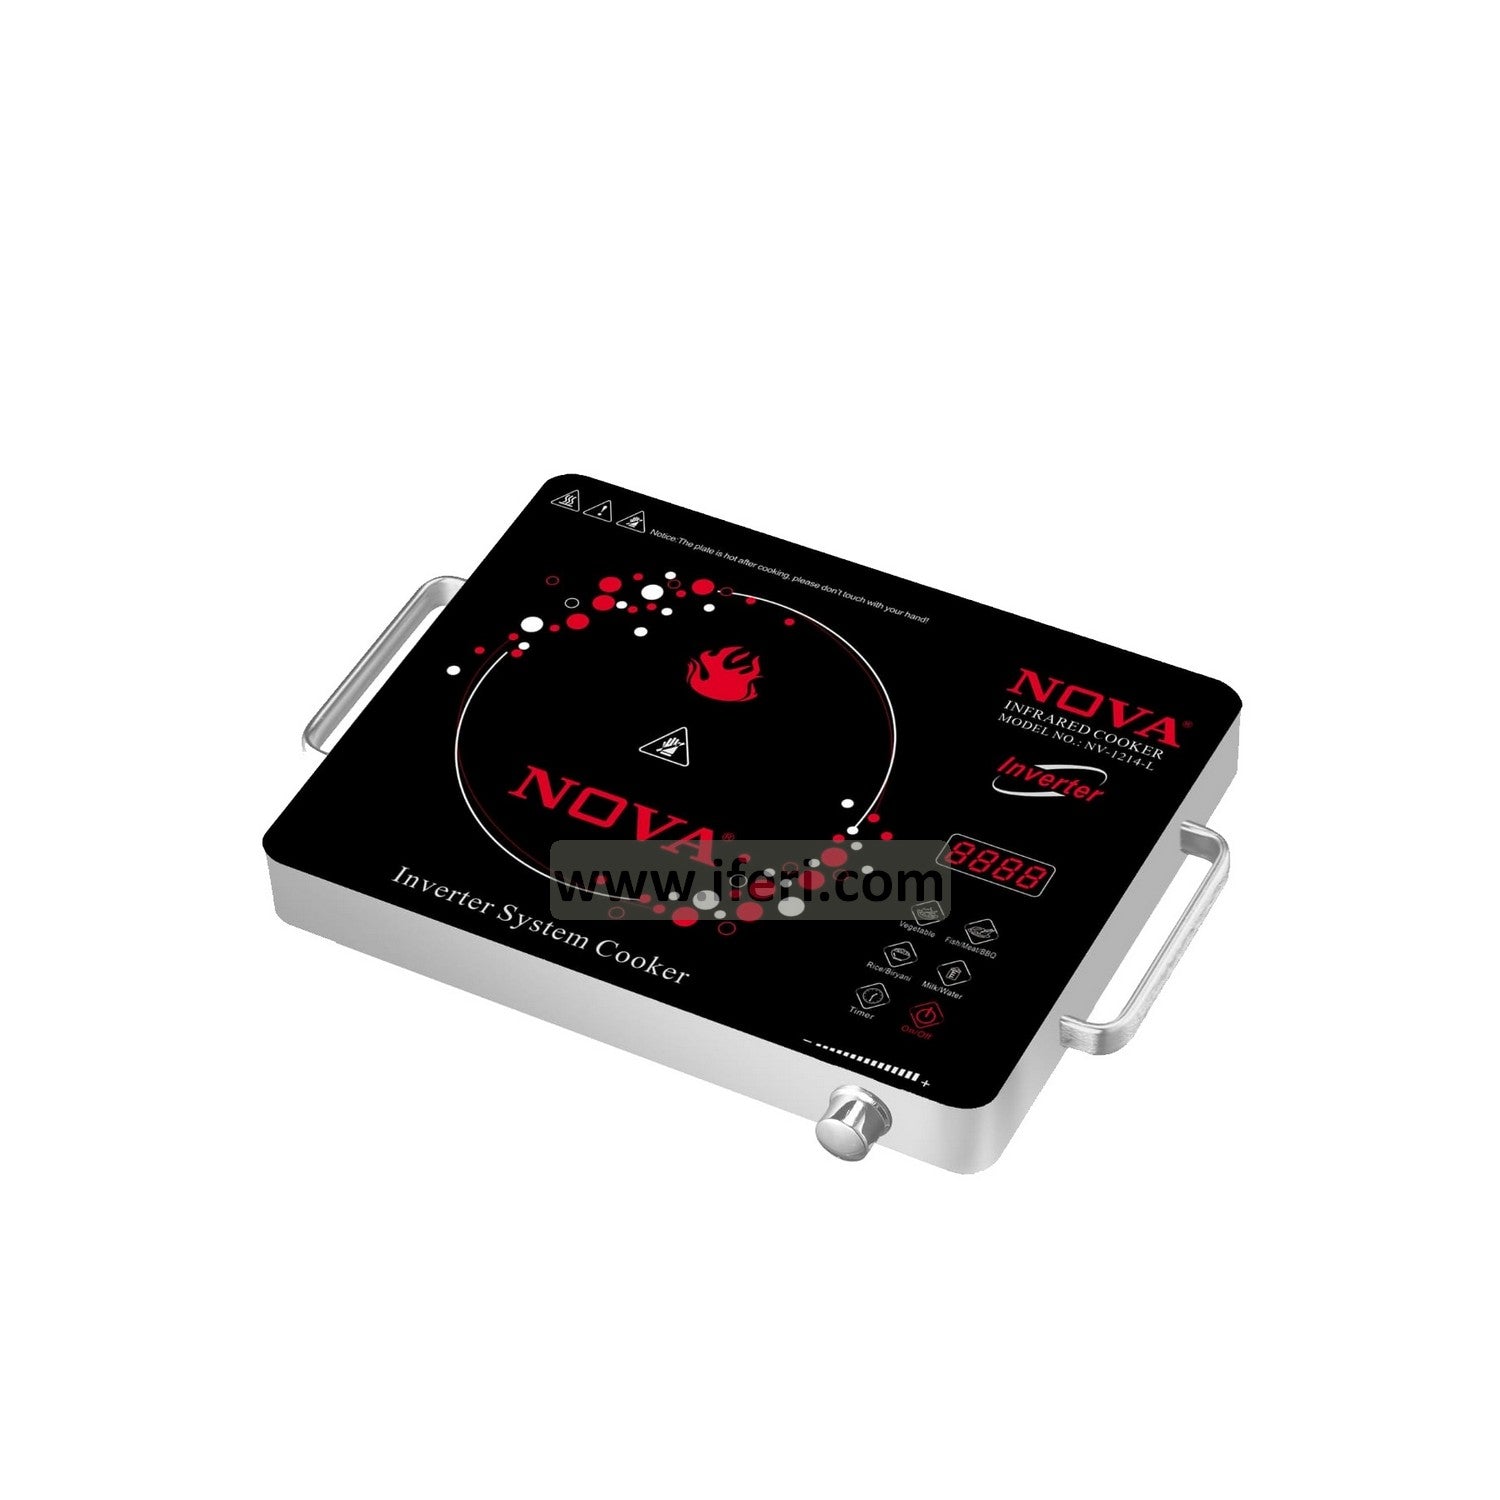 2200W NOVA Infrared Cooker (Inverter System) NV 1214-L